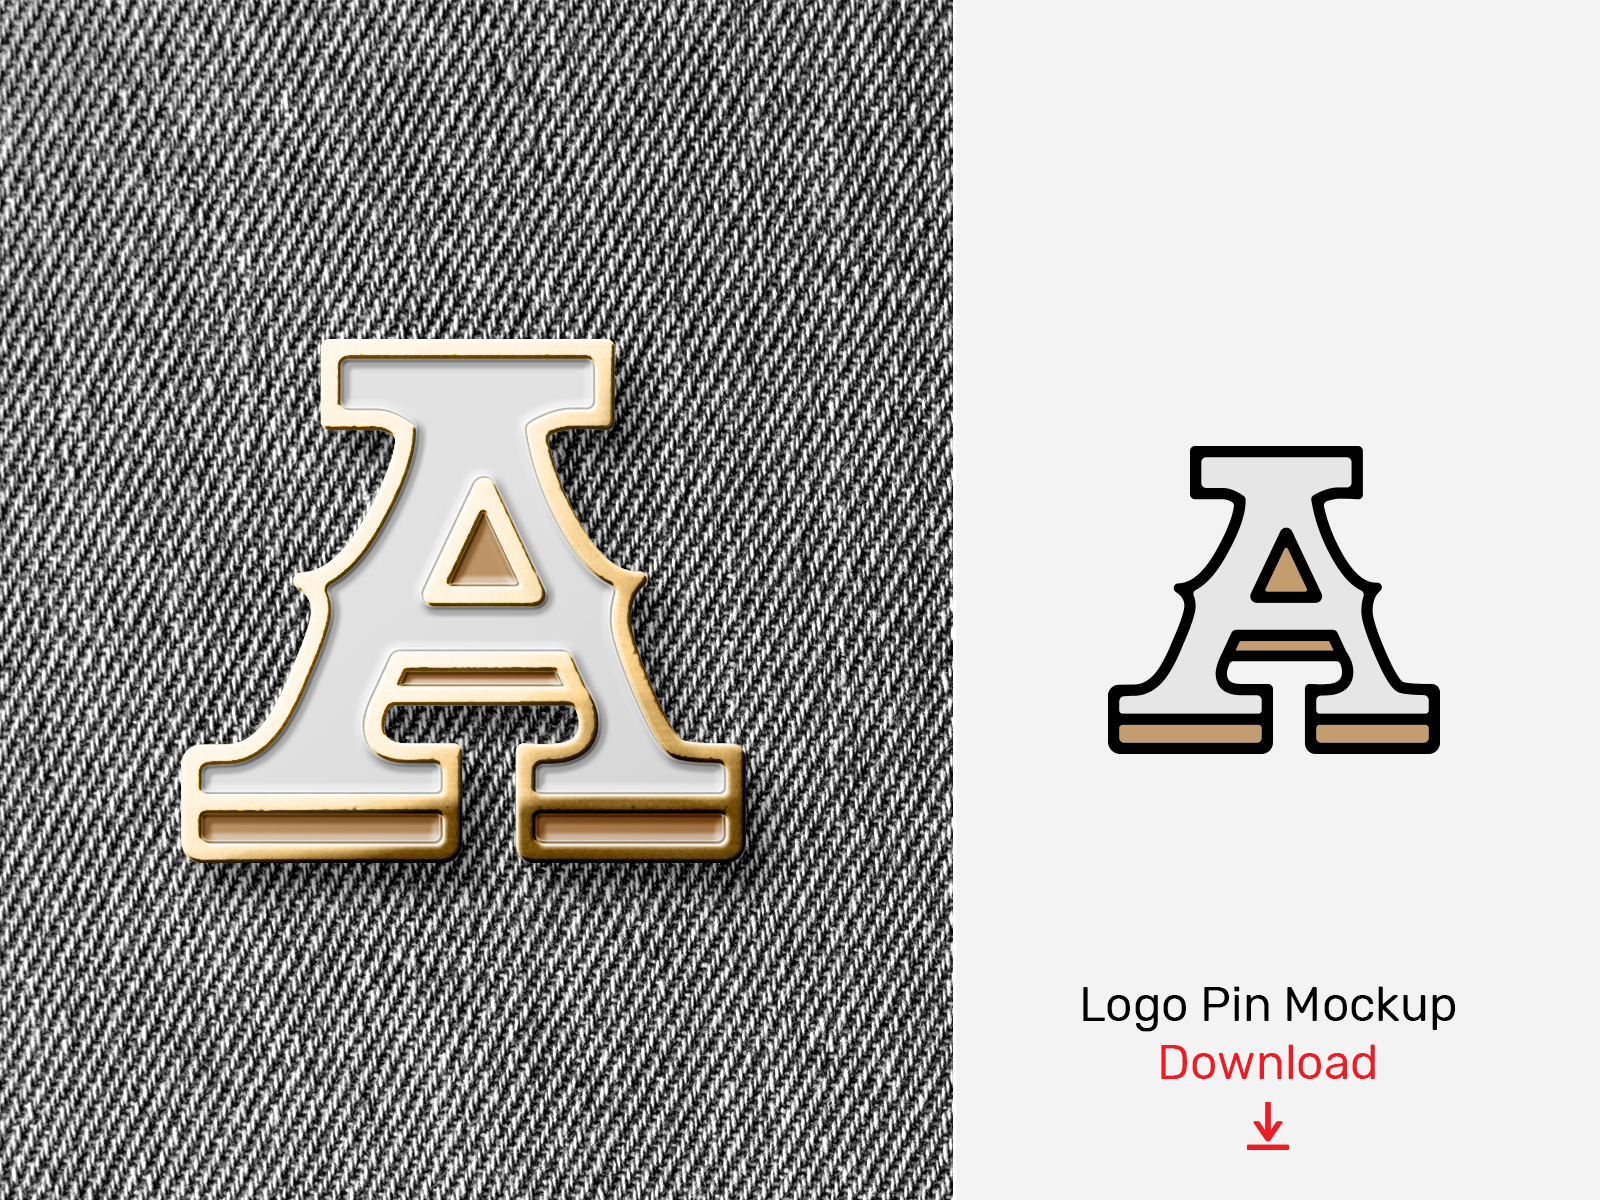 logo enamel pin mockup free